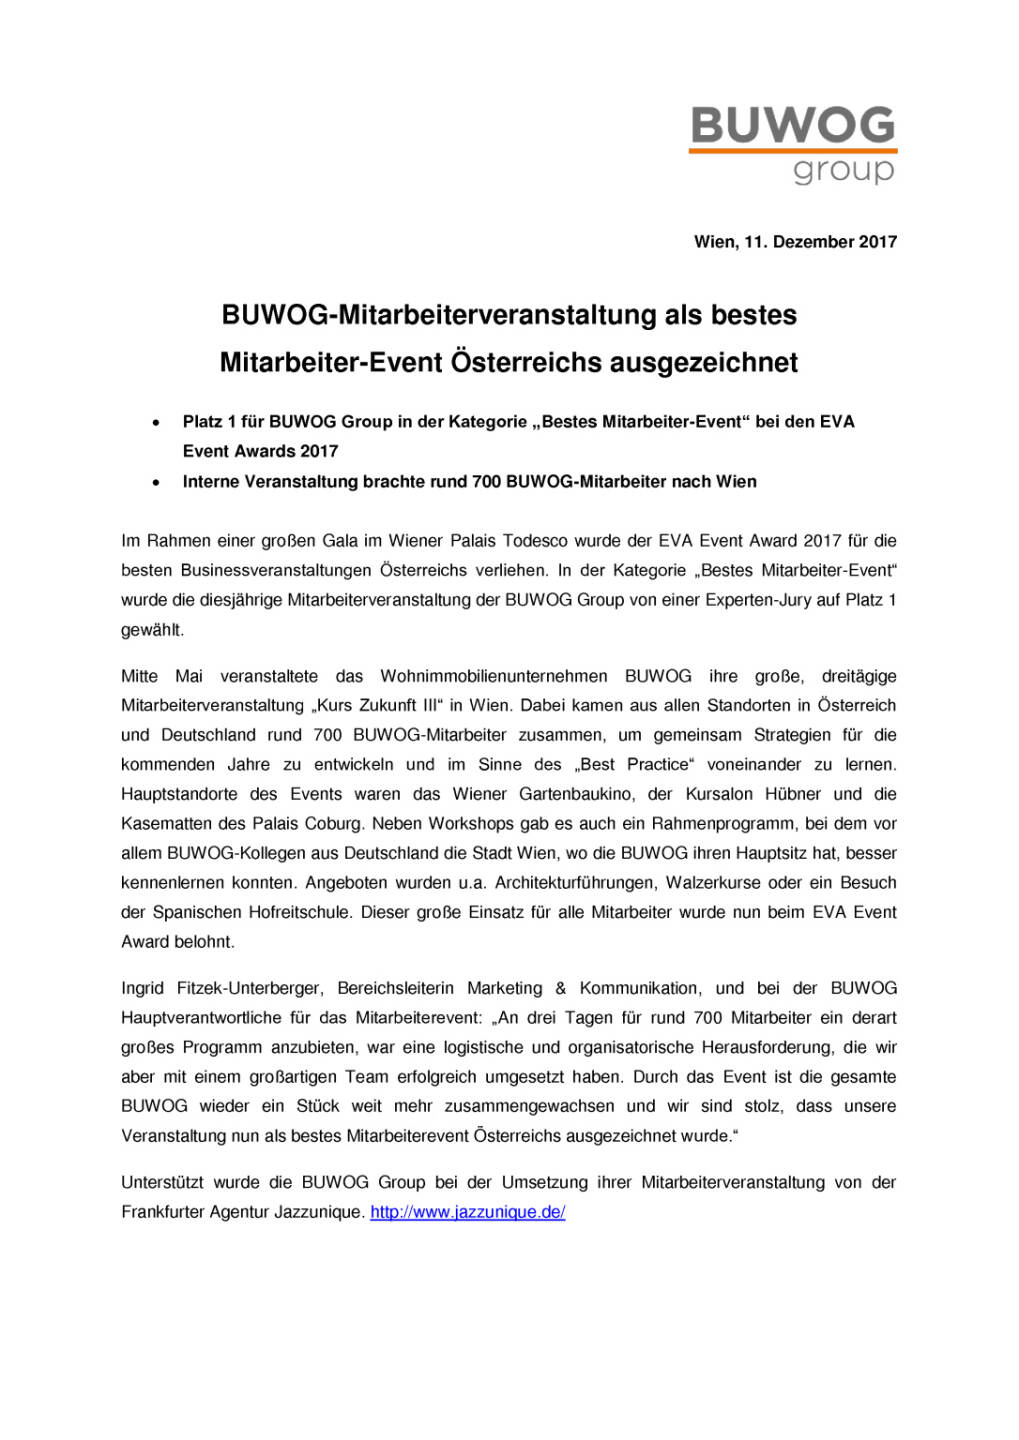 Mitarbeiterevent der BUWOG mit EVA-Award ausgezeichnet, Seite 1/2, komplettes Dokument unter http://boerse-social.com/static/uploads/file_2411_mitarbeiterevent_der_buwog_mit_eva-award_ausgezeichnet.pdf